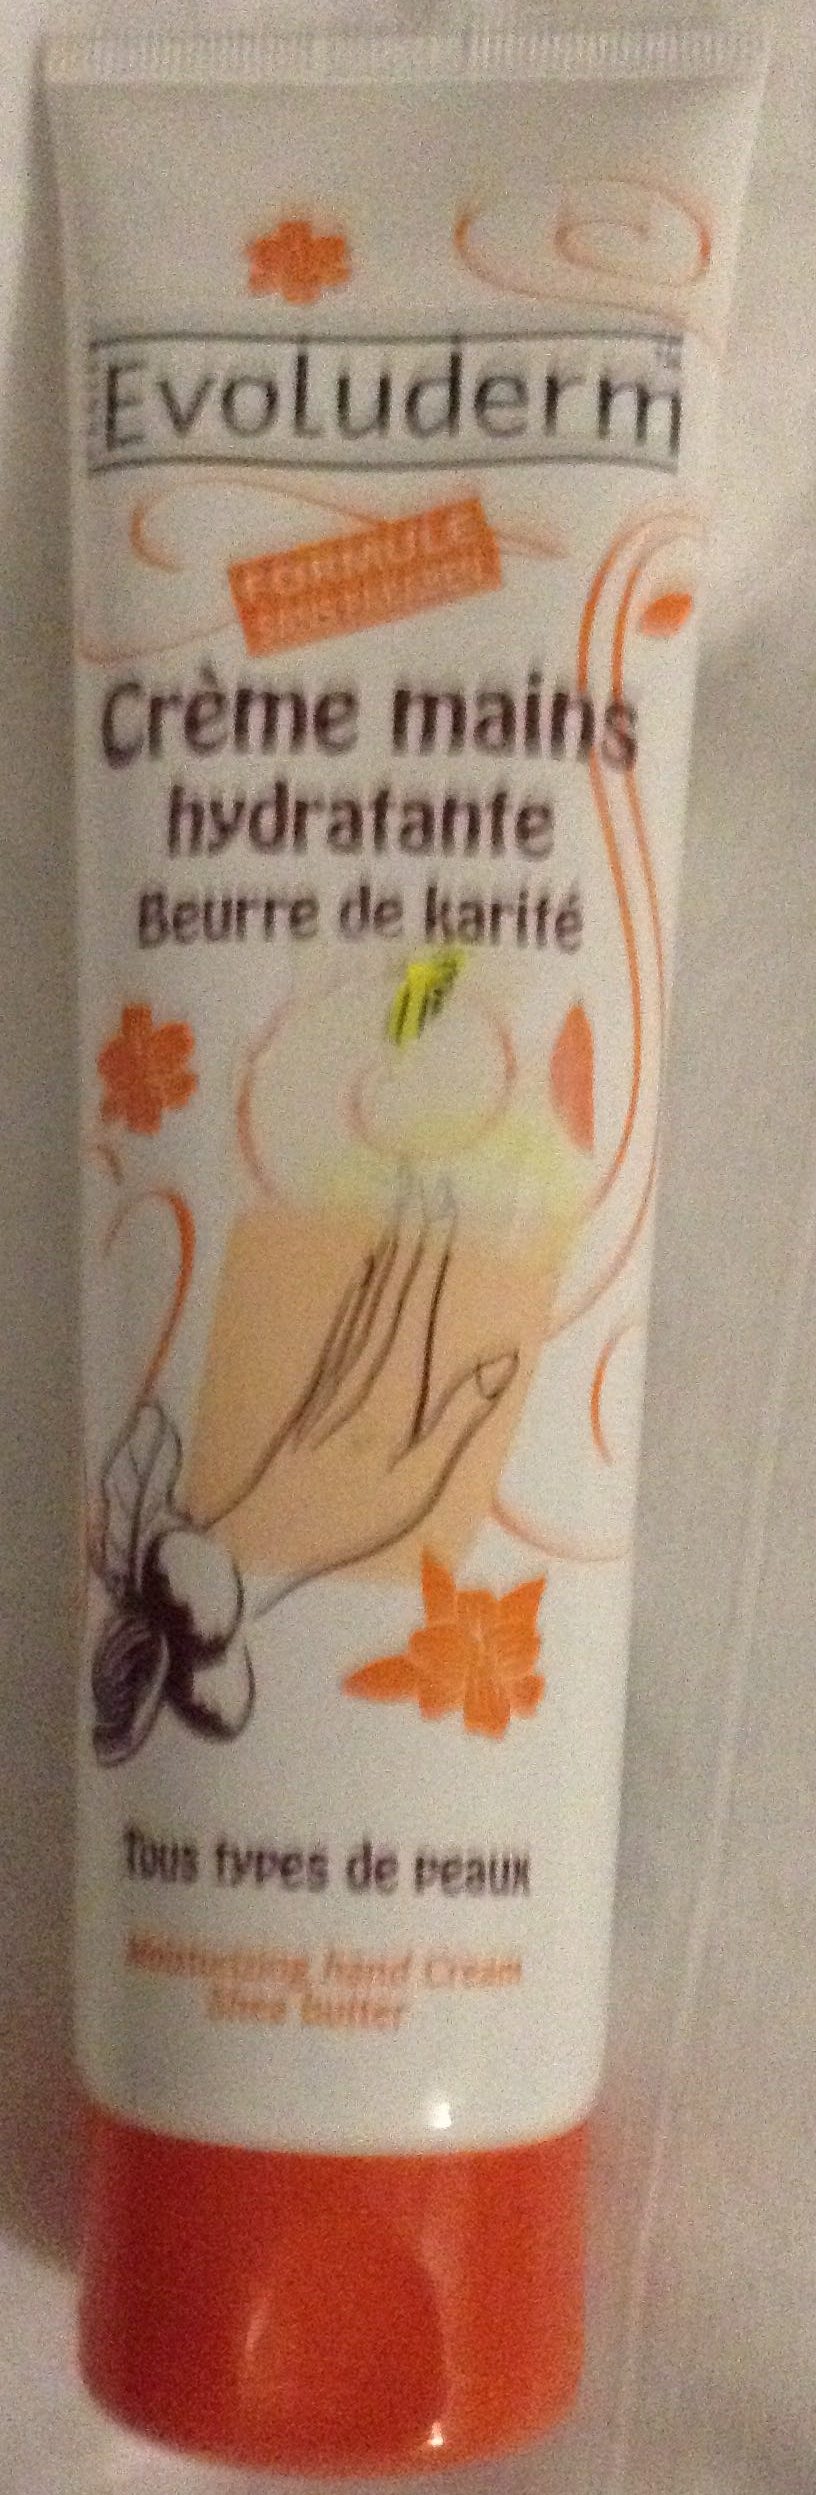 Crème main hydratante au beurre de karité - Produit - fr